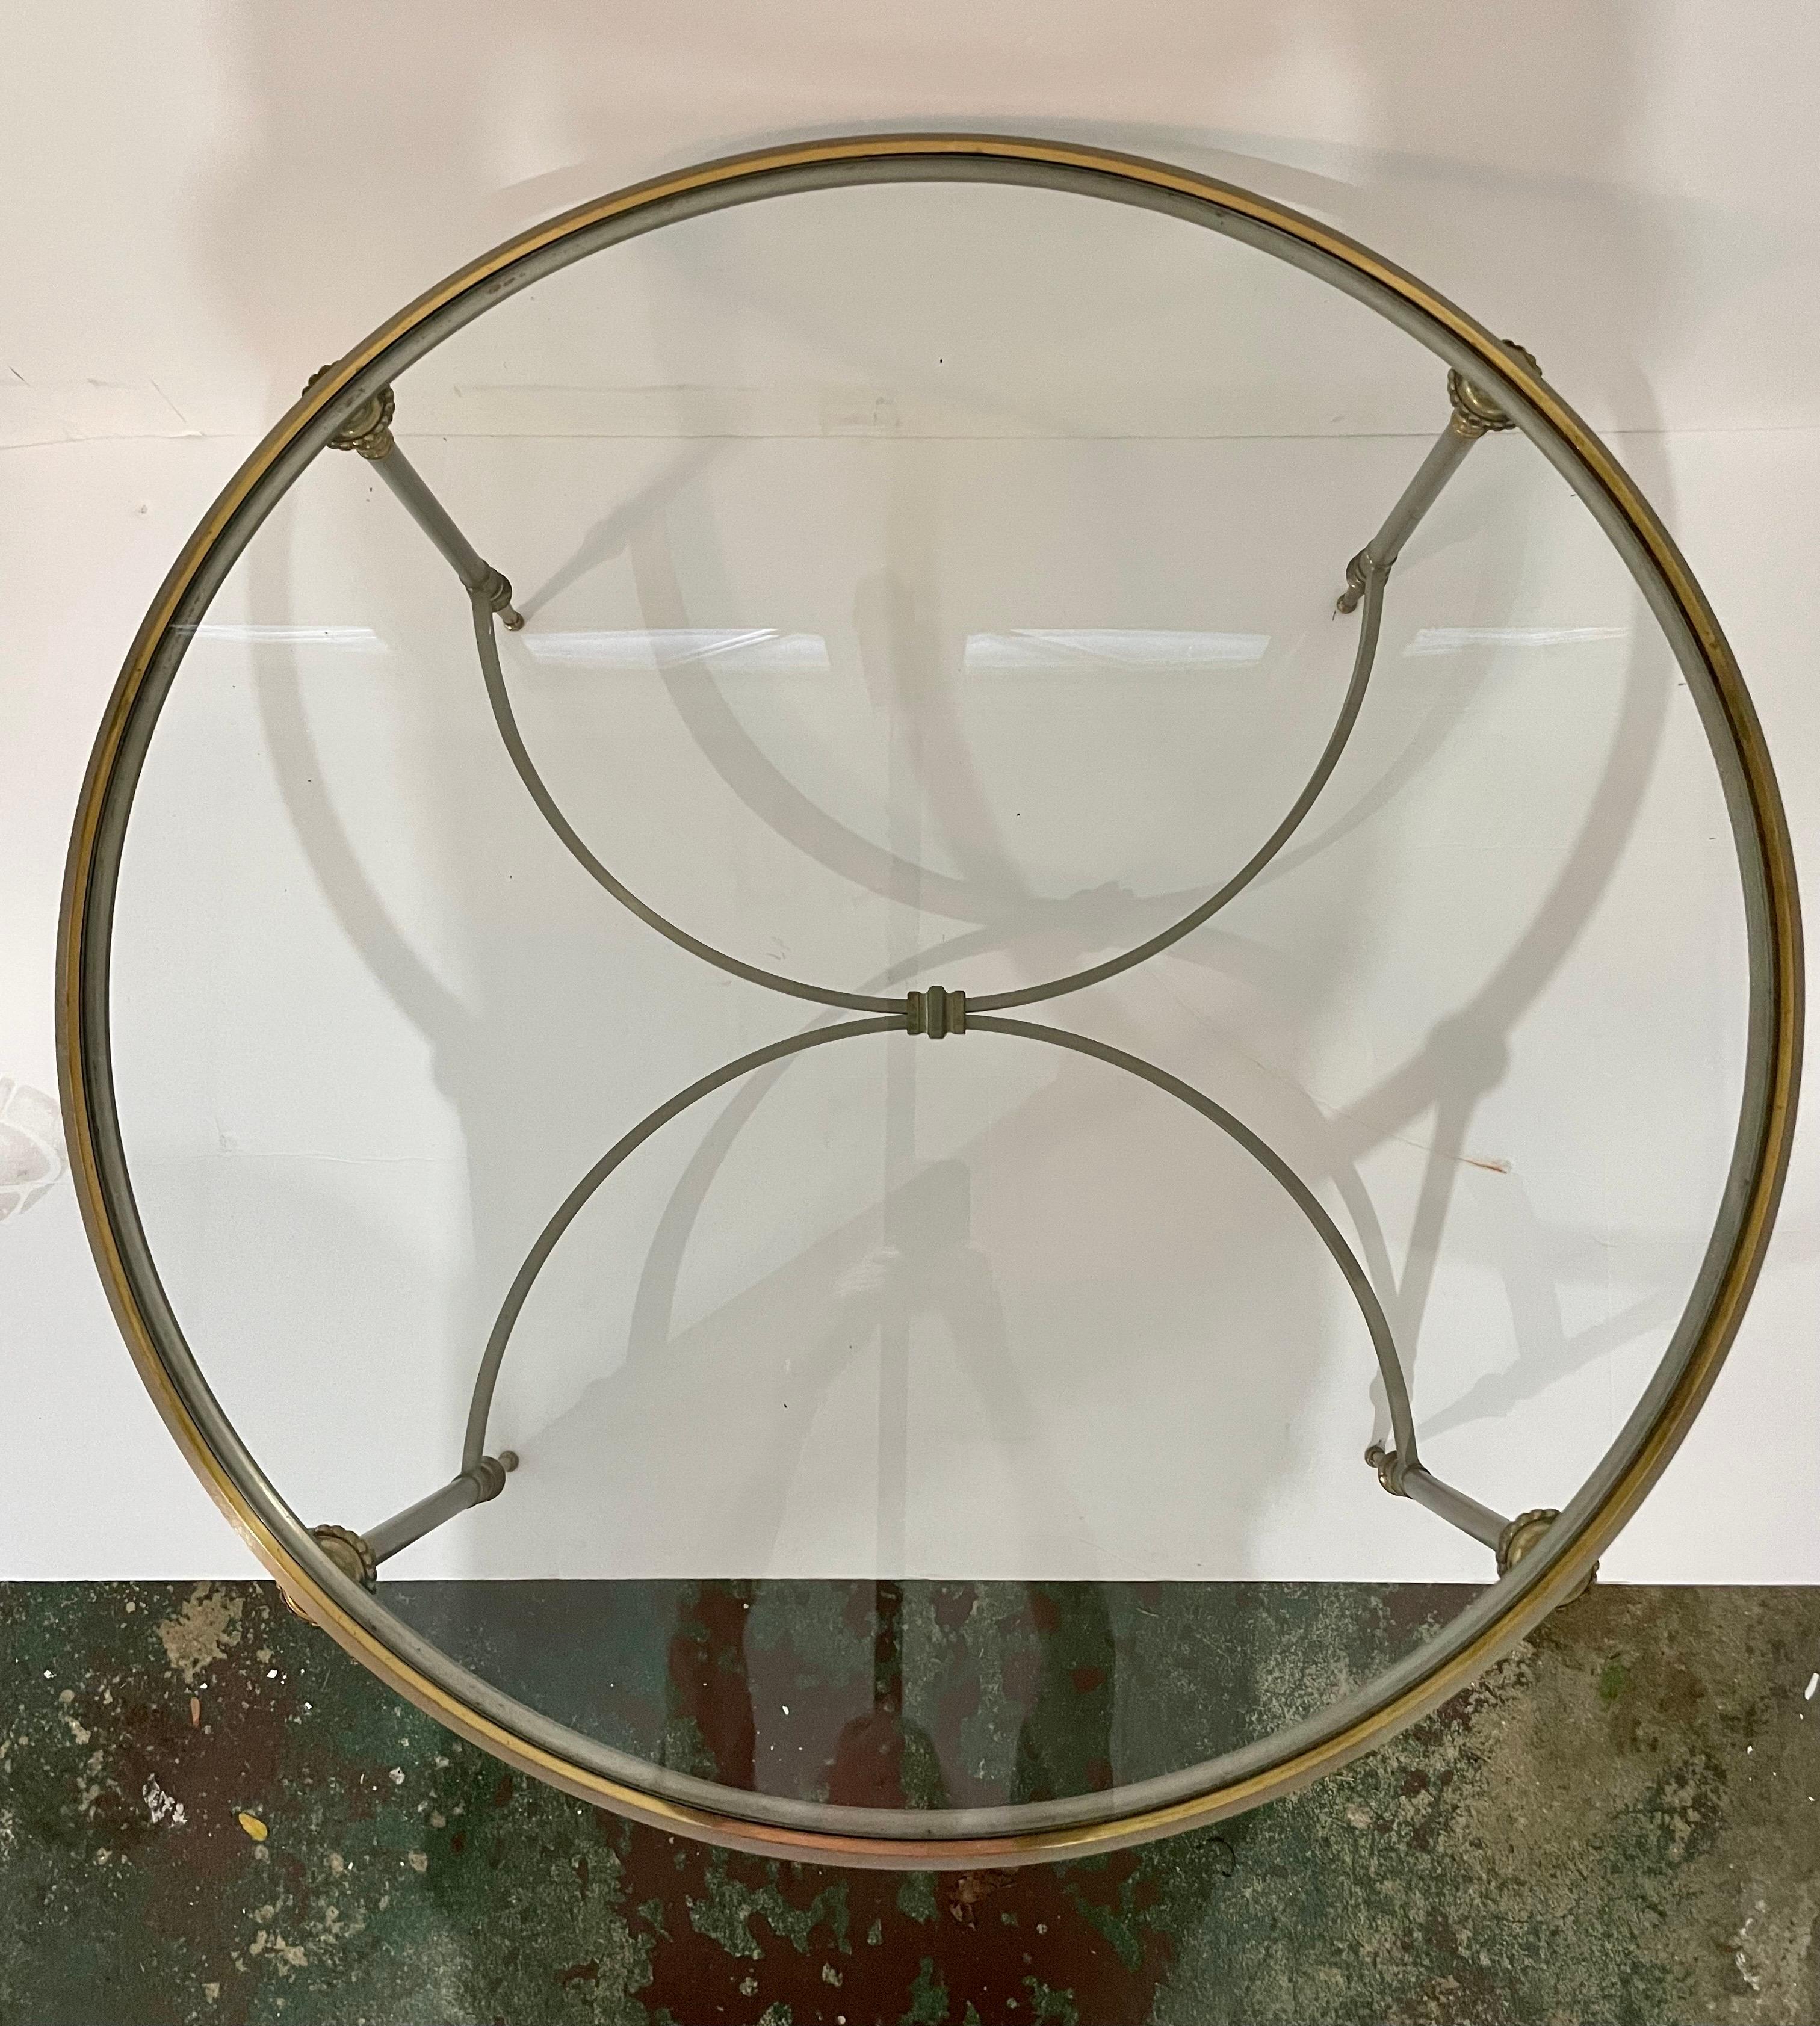 Table basse néoclassique en acier brossé et laiton avec plateau en verre inséré, de style Maison Jansen. Conçu par Yale Burge. Vers les années 60. Veuillez noter l'usure due à l'âge, y compris l'oxydation mineure sur la garniture métallique et les